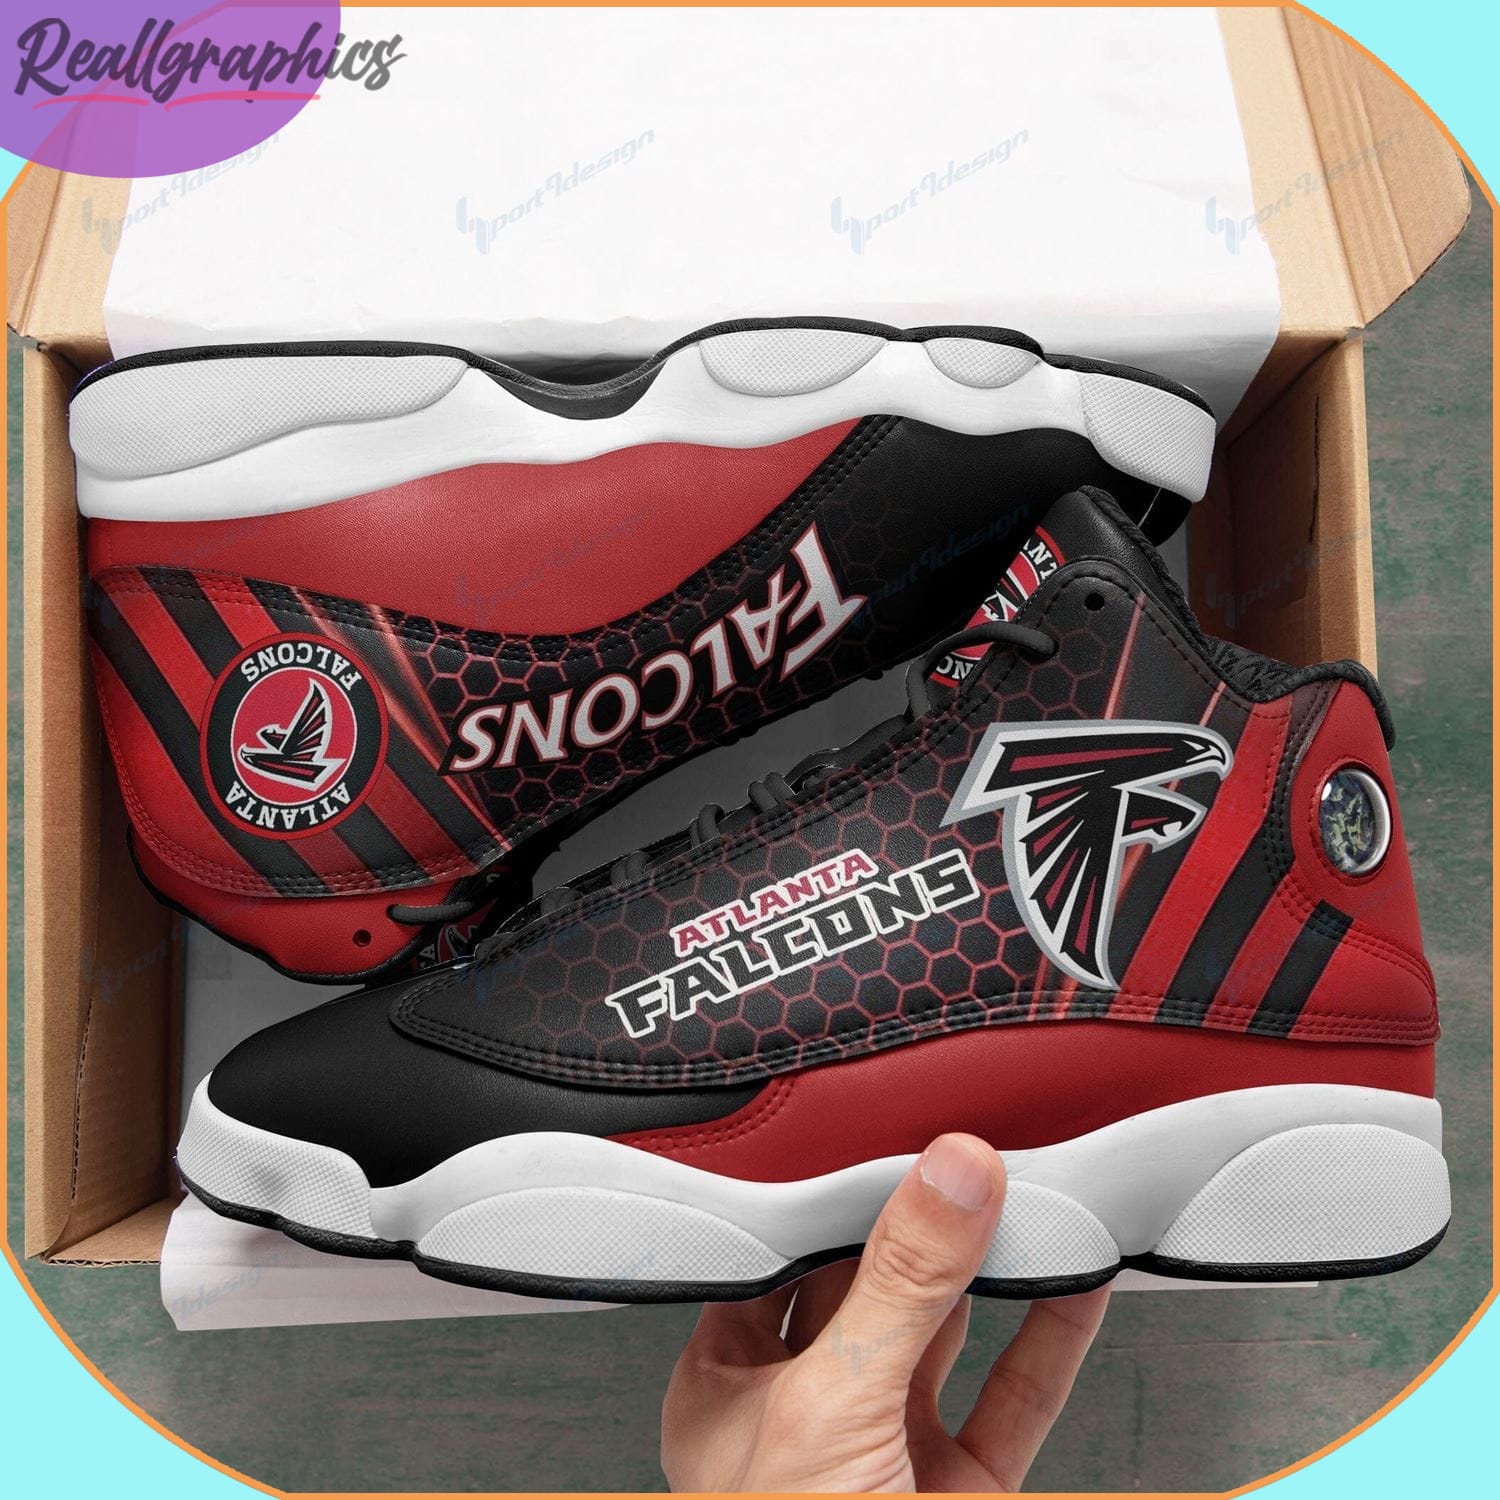 Atlanta Falcons Air Jordan 13 Sneakers